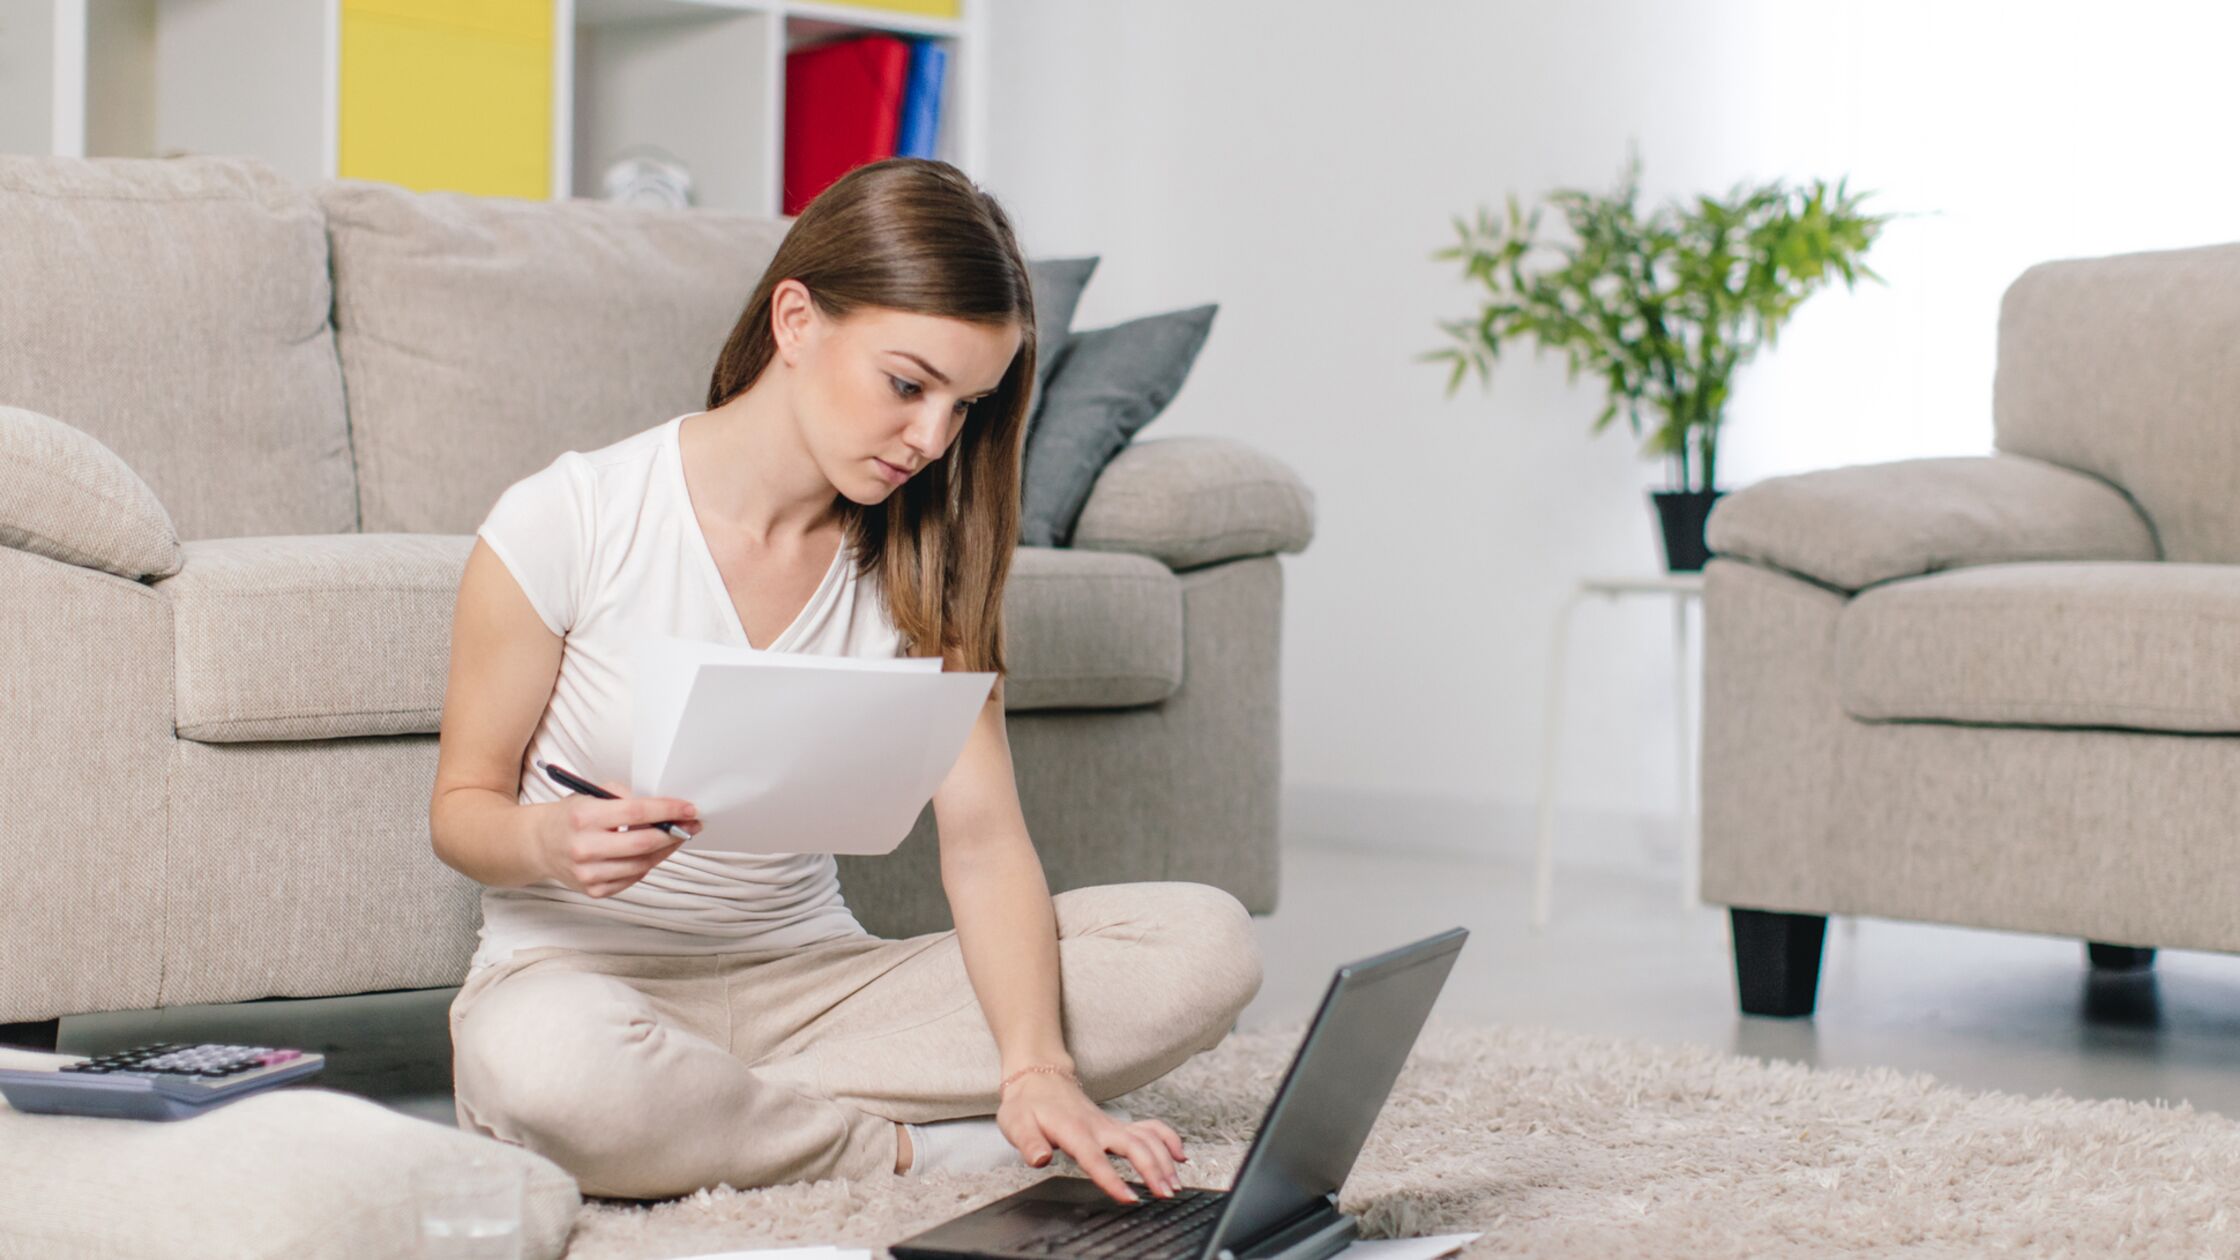 Junge Frau sitzt mit Laptop und Formularen auf dem Boden im Wohnzimmer